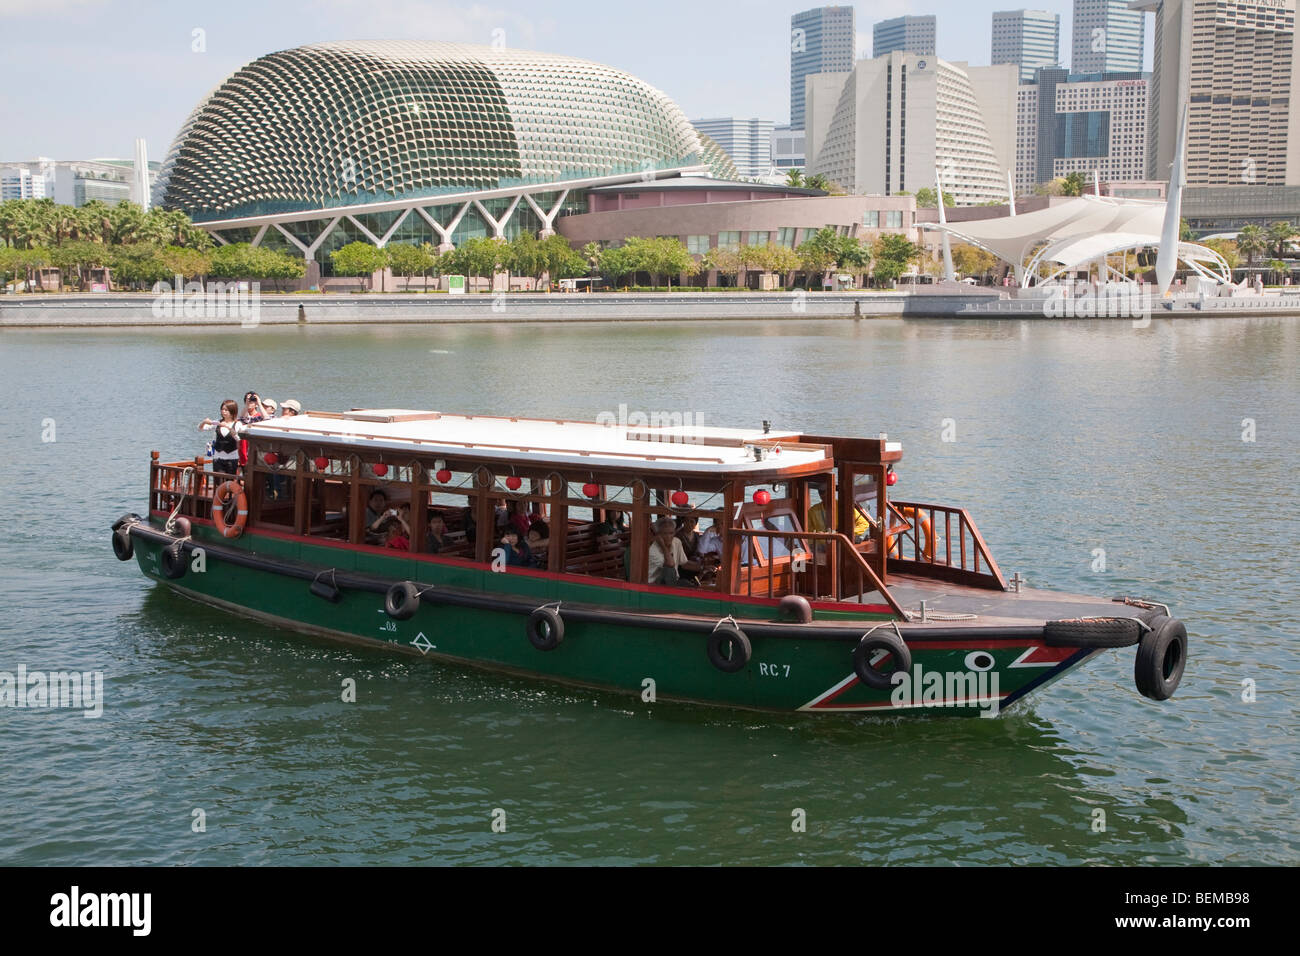 Un tour in barca sul Fiume Singapore di fronte all'Esplanade, i teatri sulla baia (aka "Durian') in Singapore Foto Stock